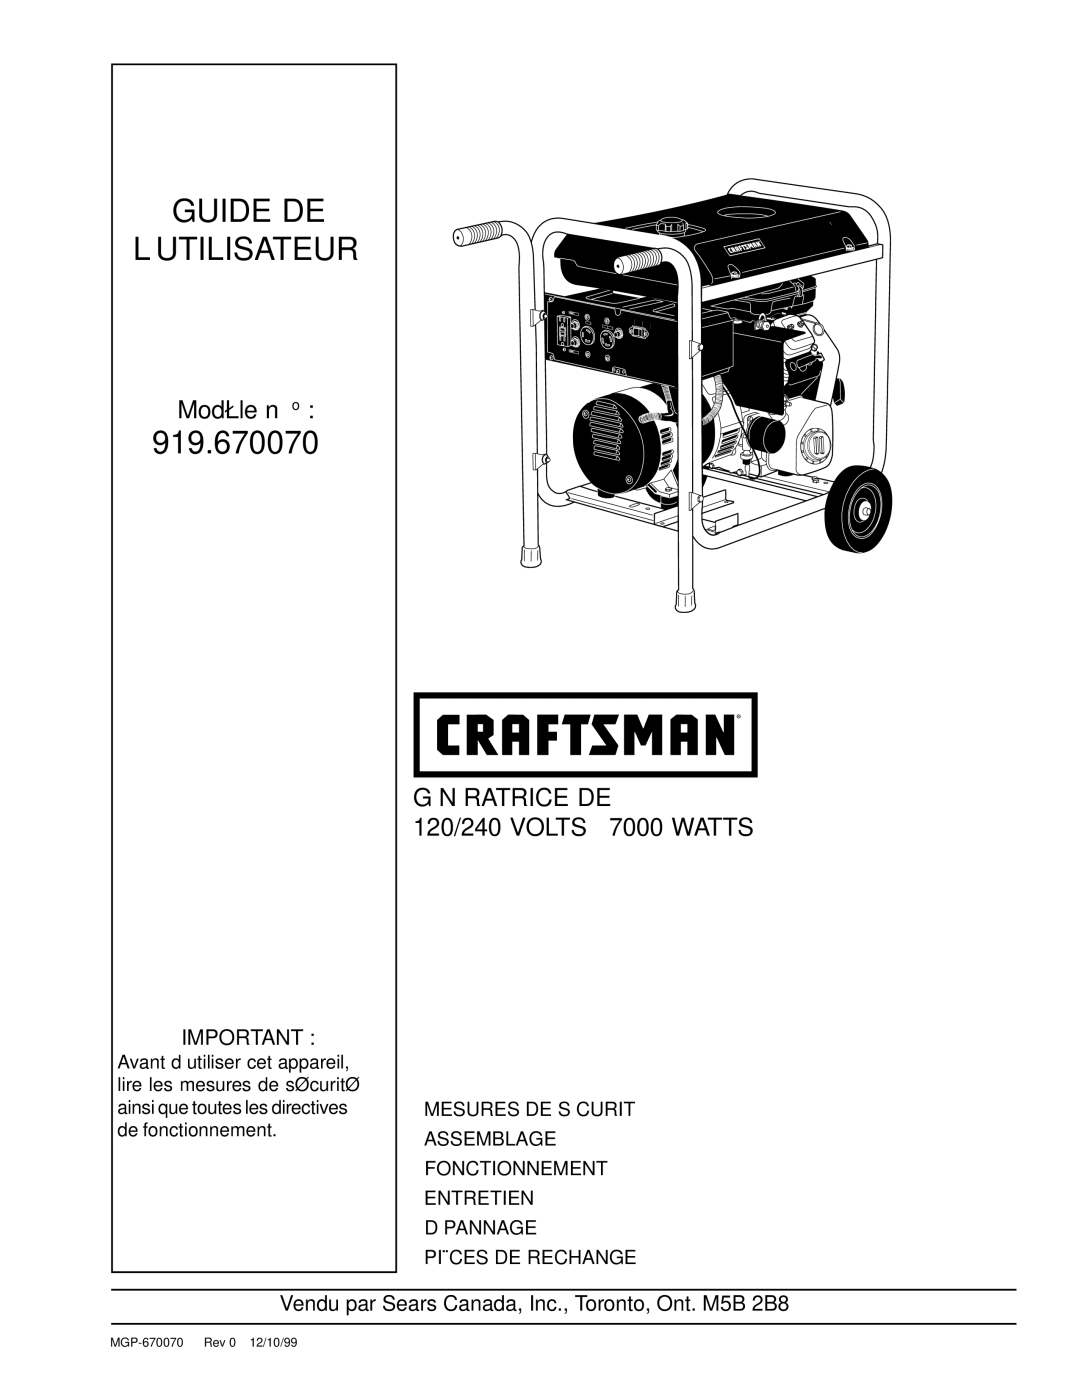 Craftsman 919.670070, MGP-670070 owner manual Génératrice DE, Vendu par Sears Canada, Inc., Toronto, Ont. M5B 2B8 